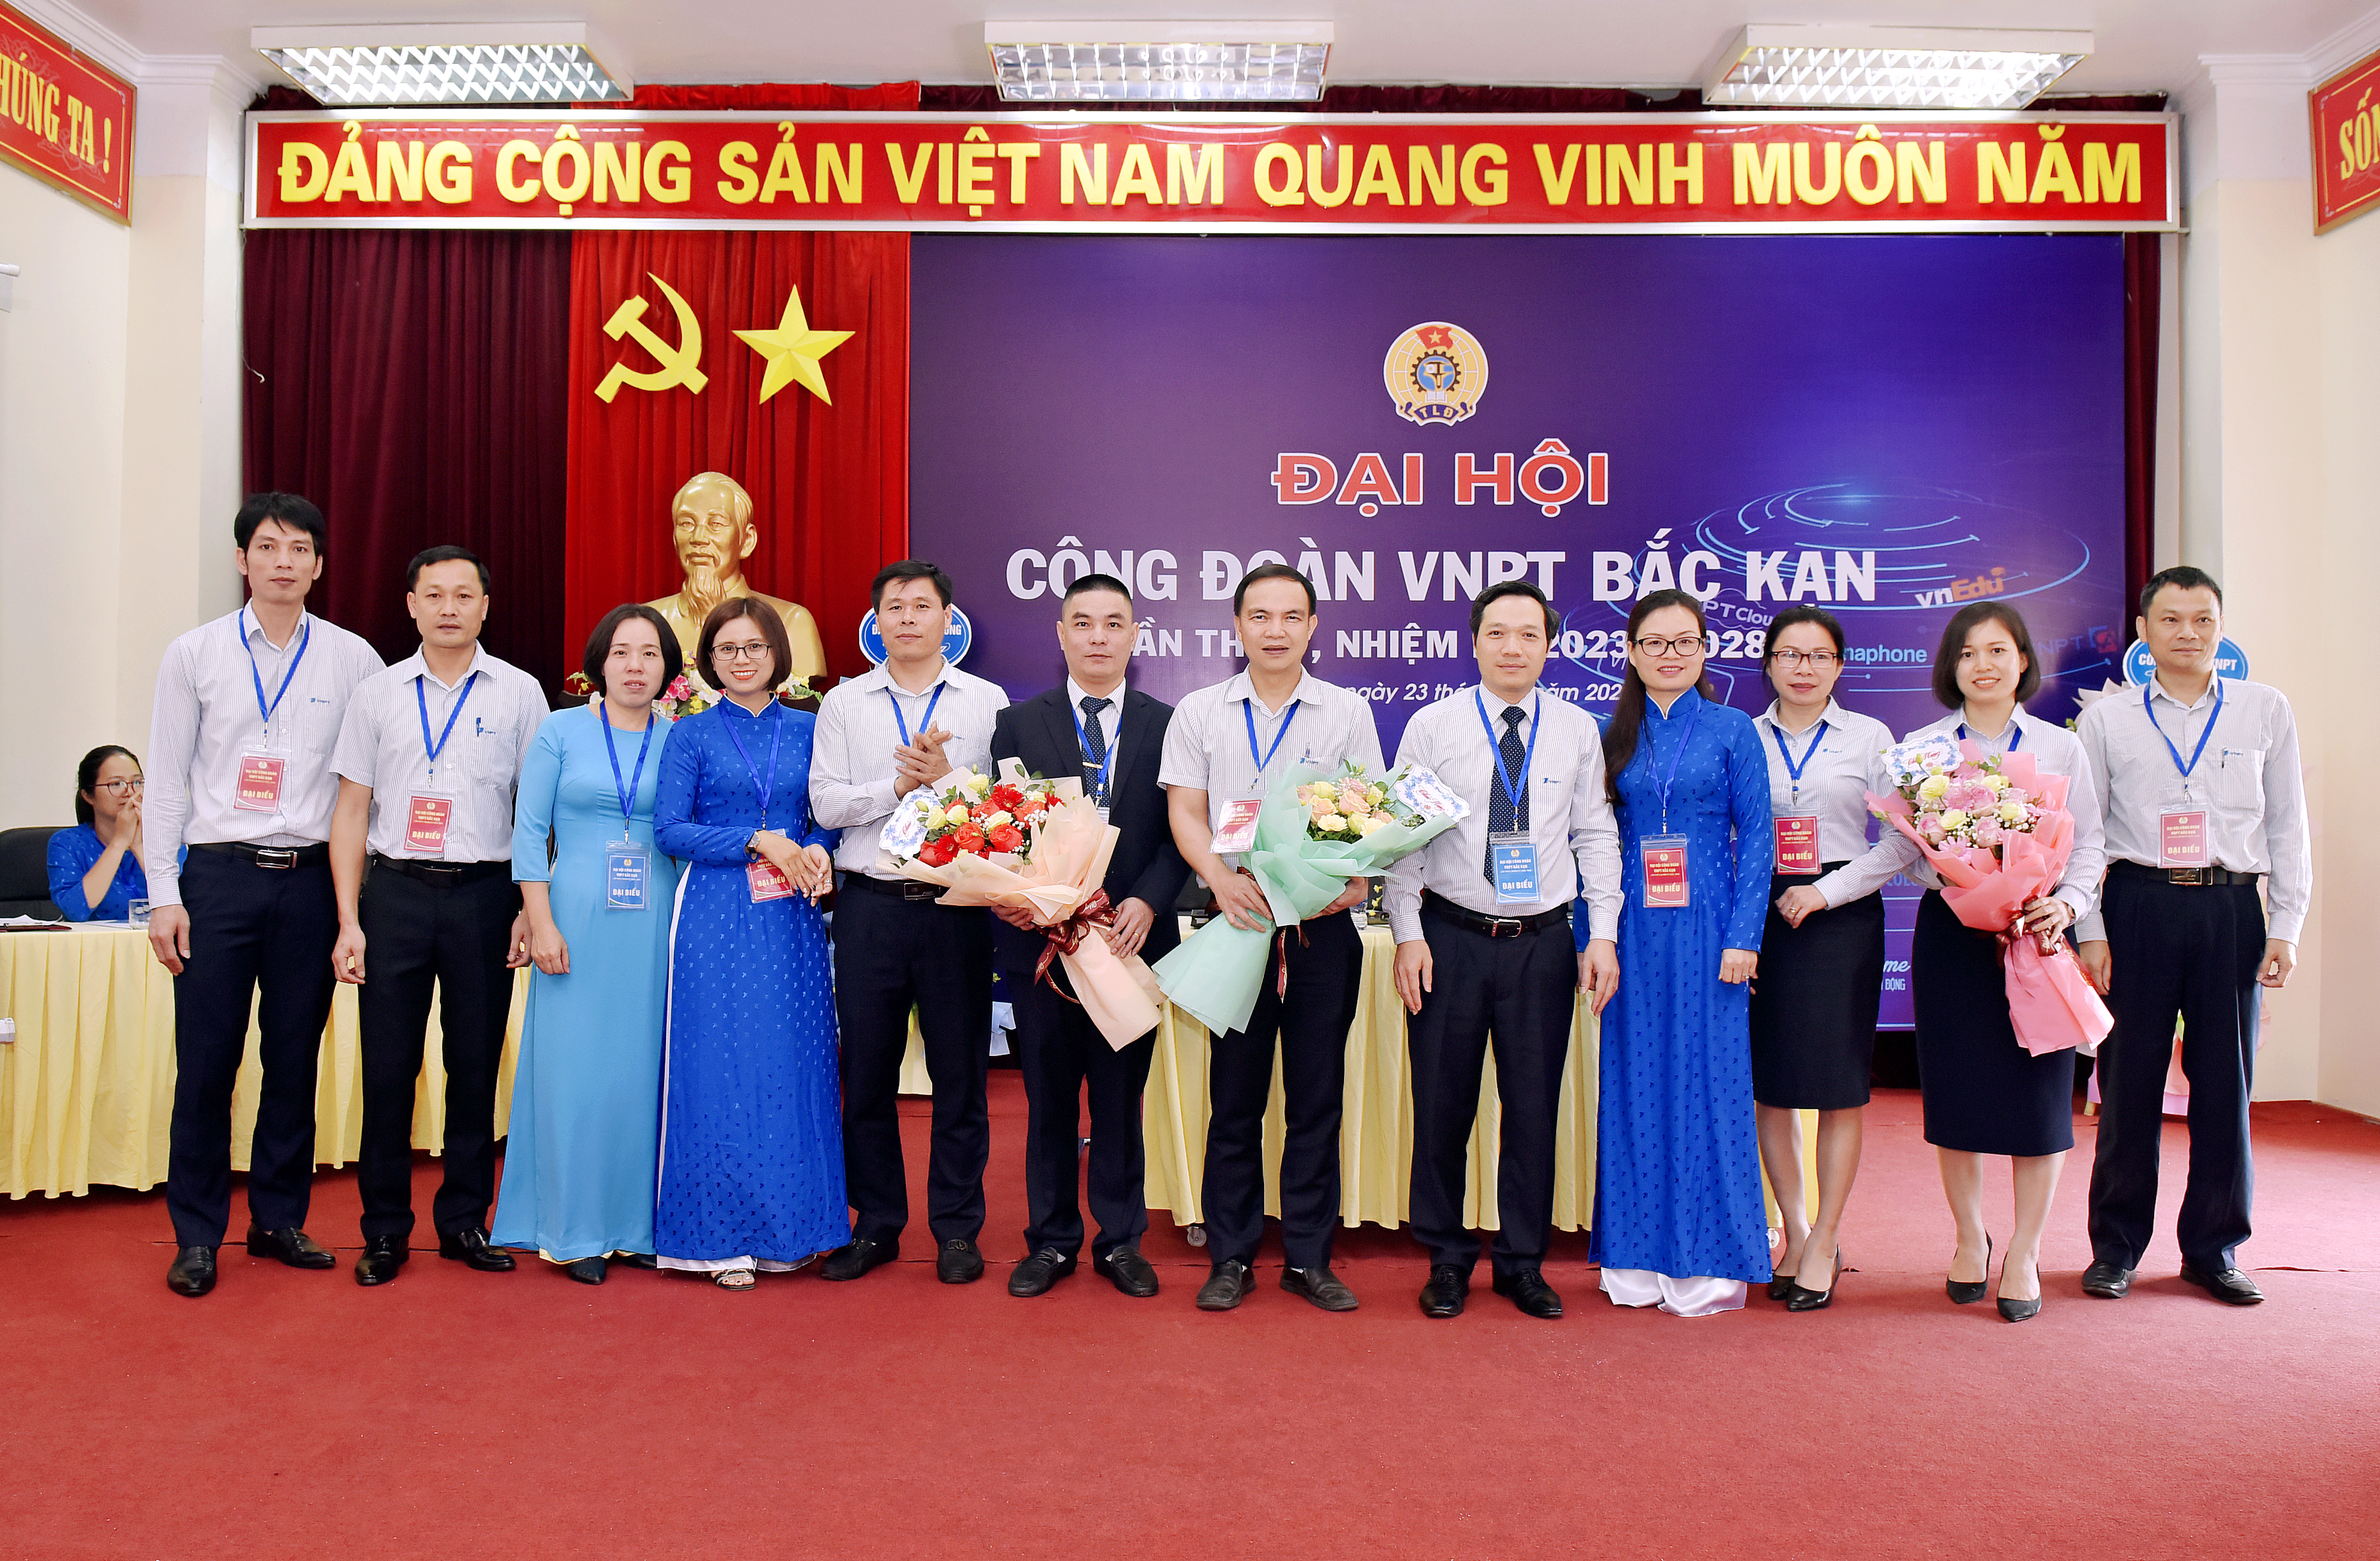 Công đoàn VNPT Bắc Kạn tổ chức thành công Đại hội lần thứ V, nhiệm kỳ 2023 - 2028